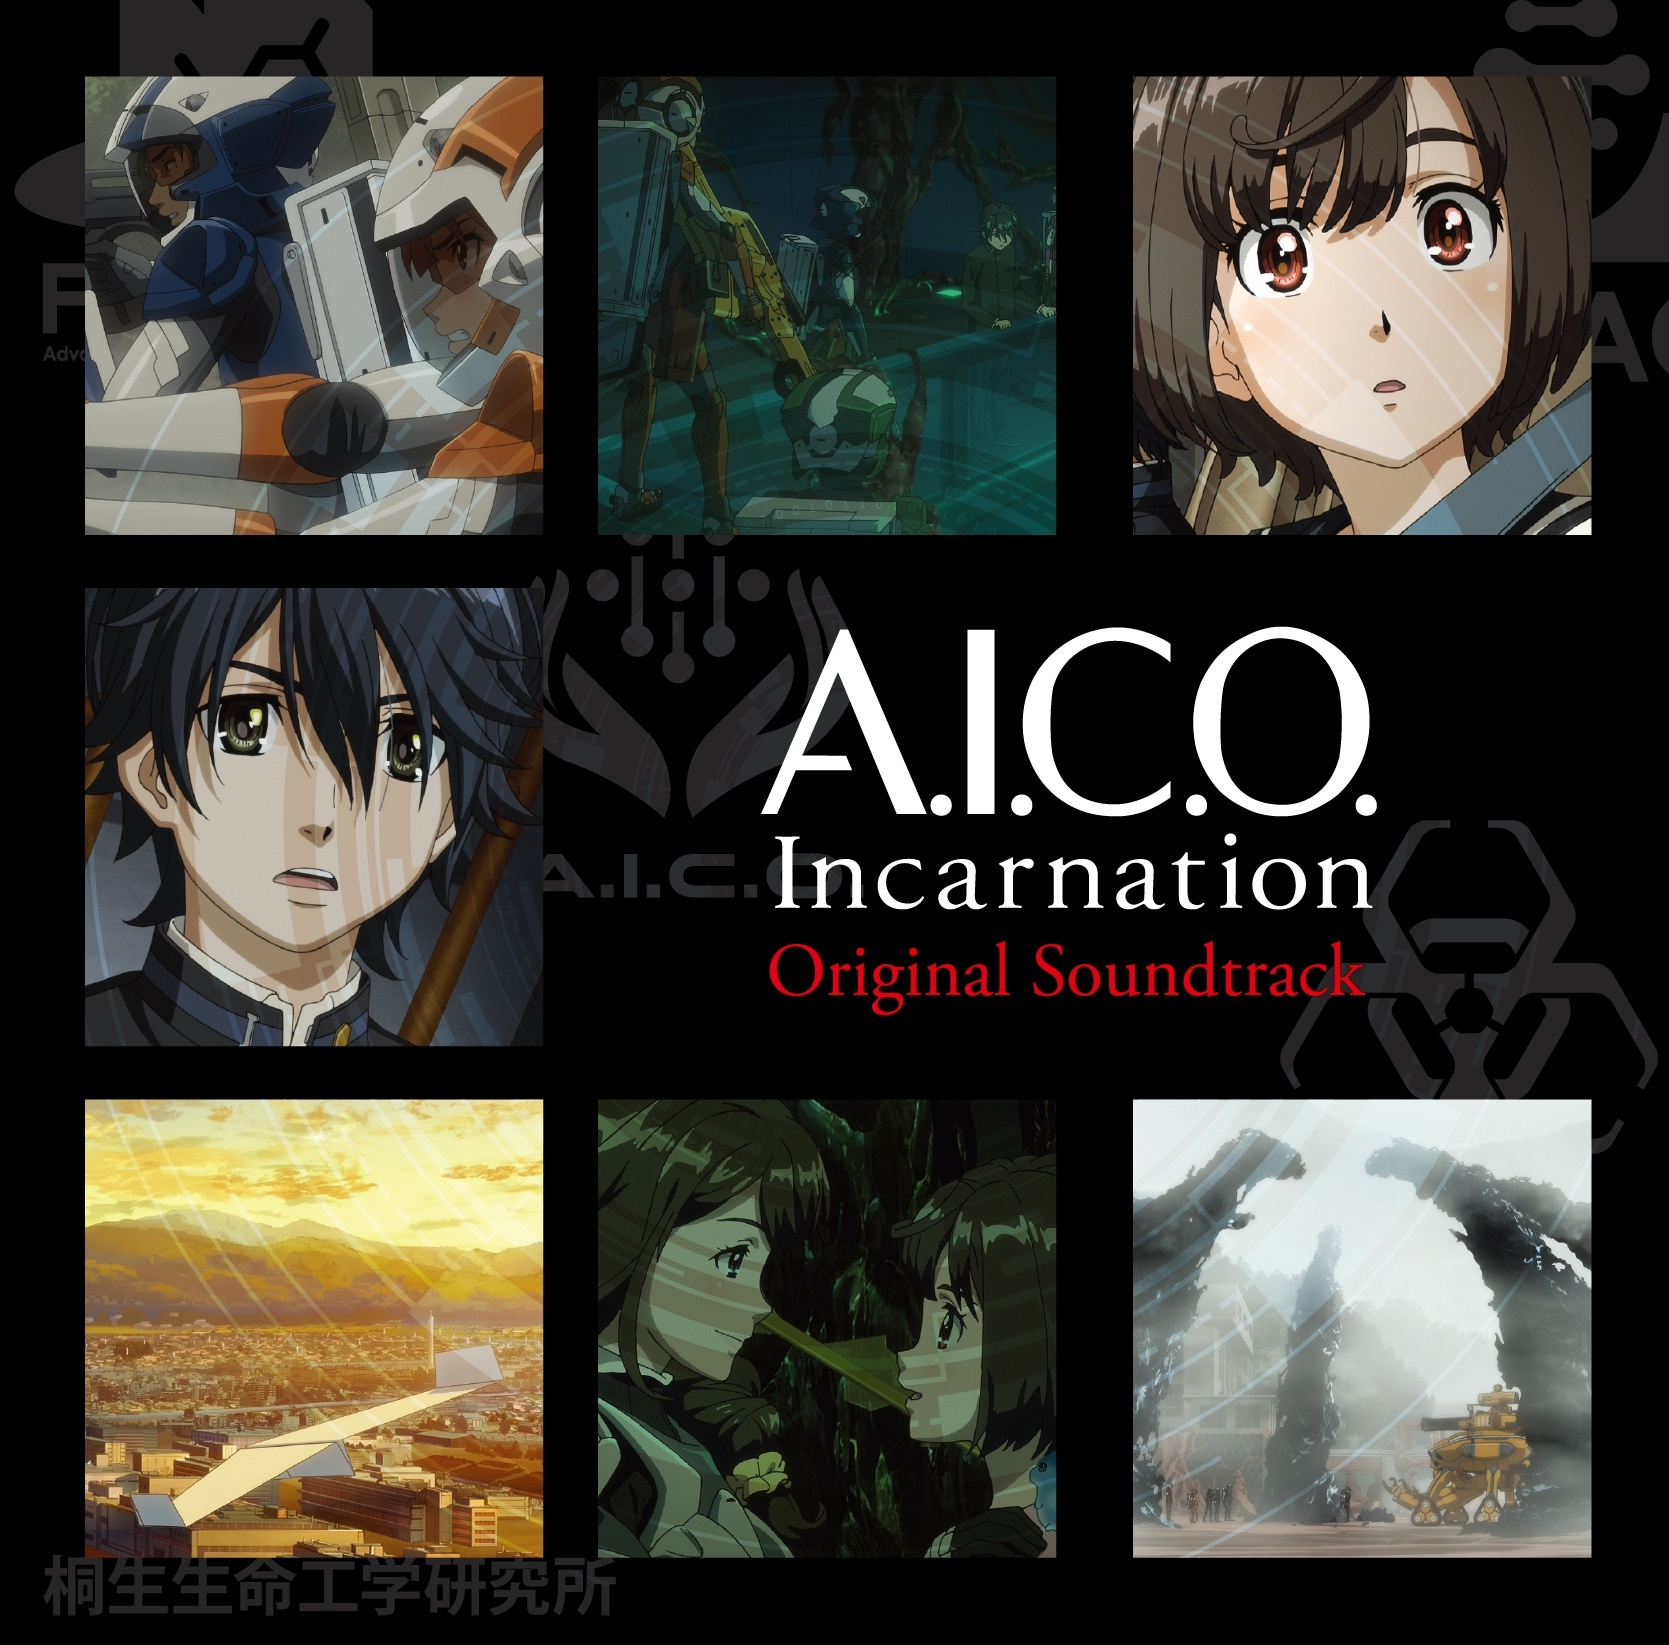 アニメ『A.I.C.O. Incarnation』 オリジナルサウンドトラック